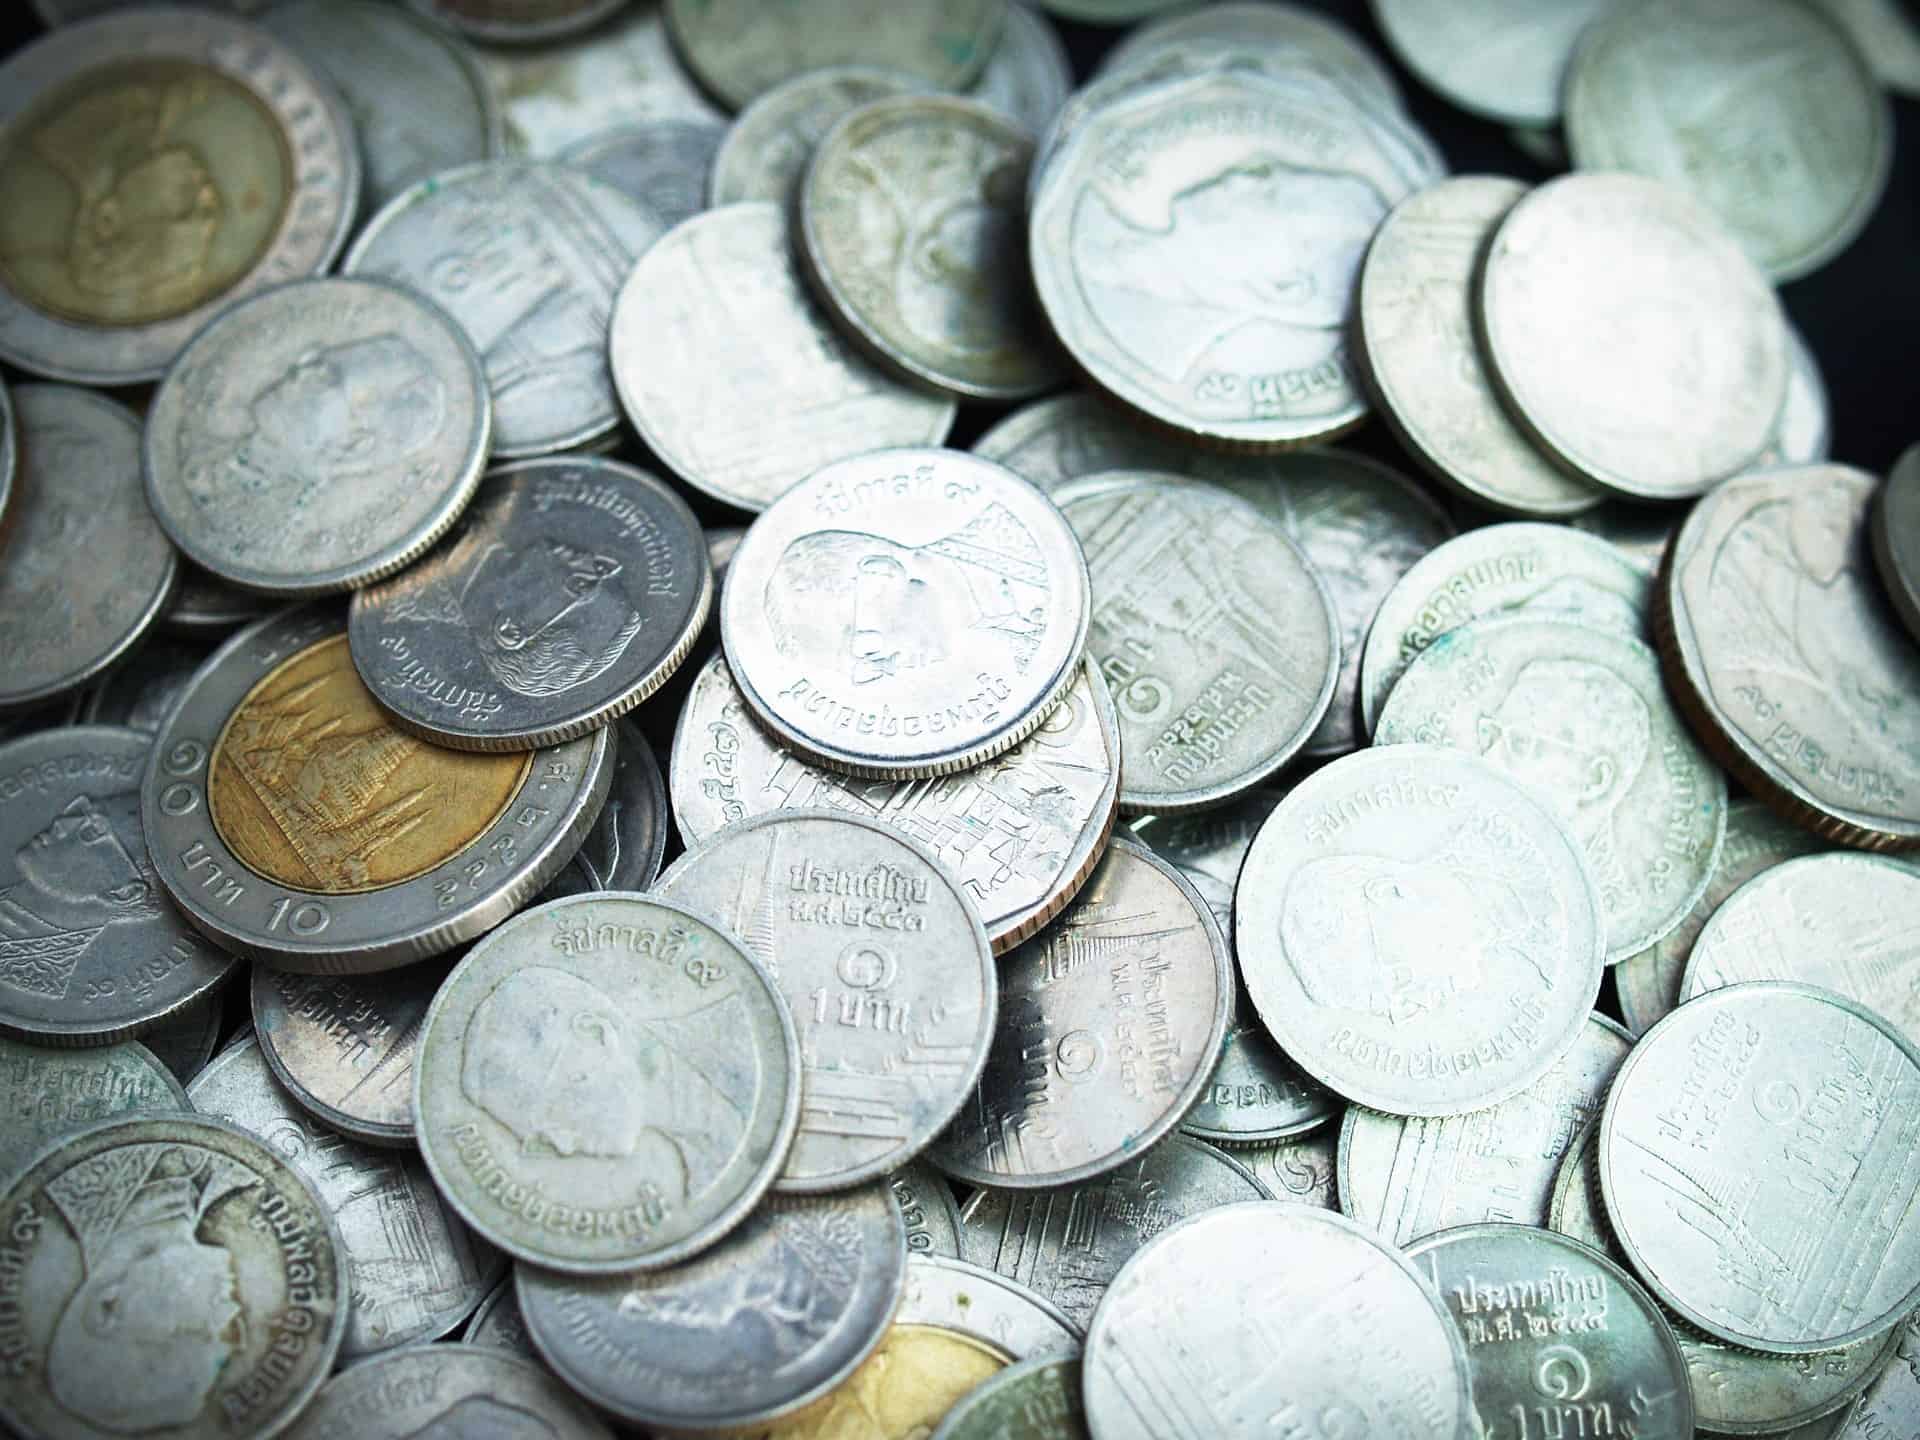 Thailand coins